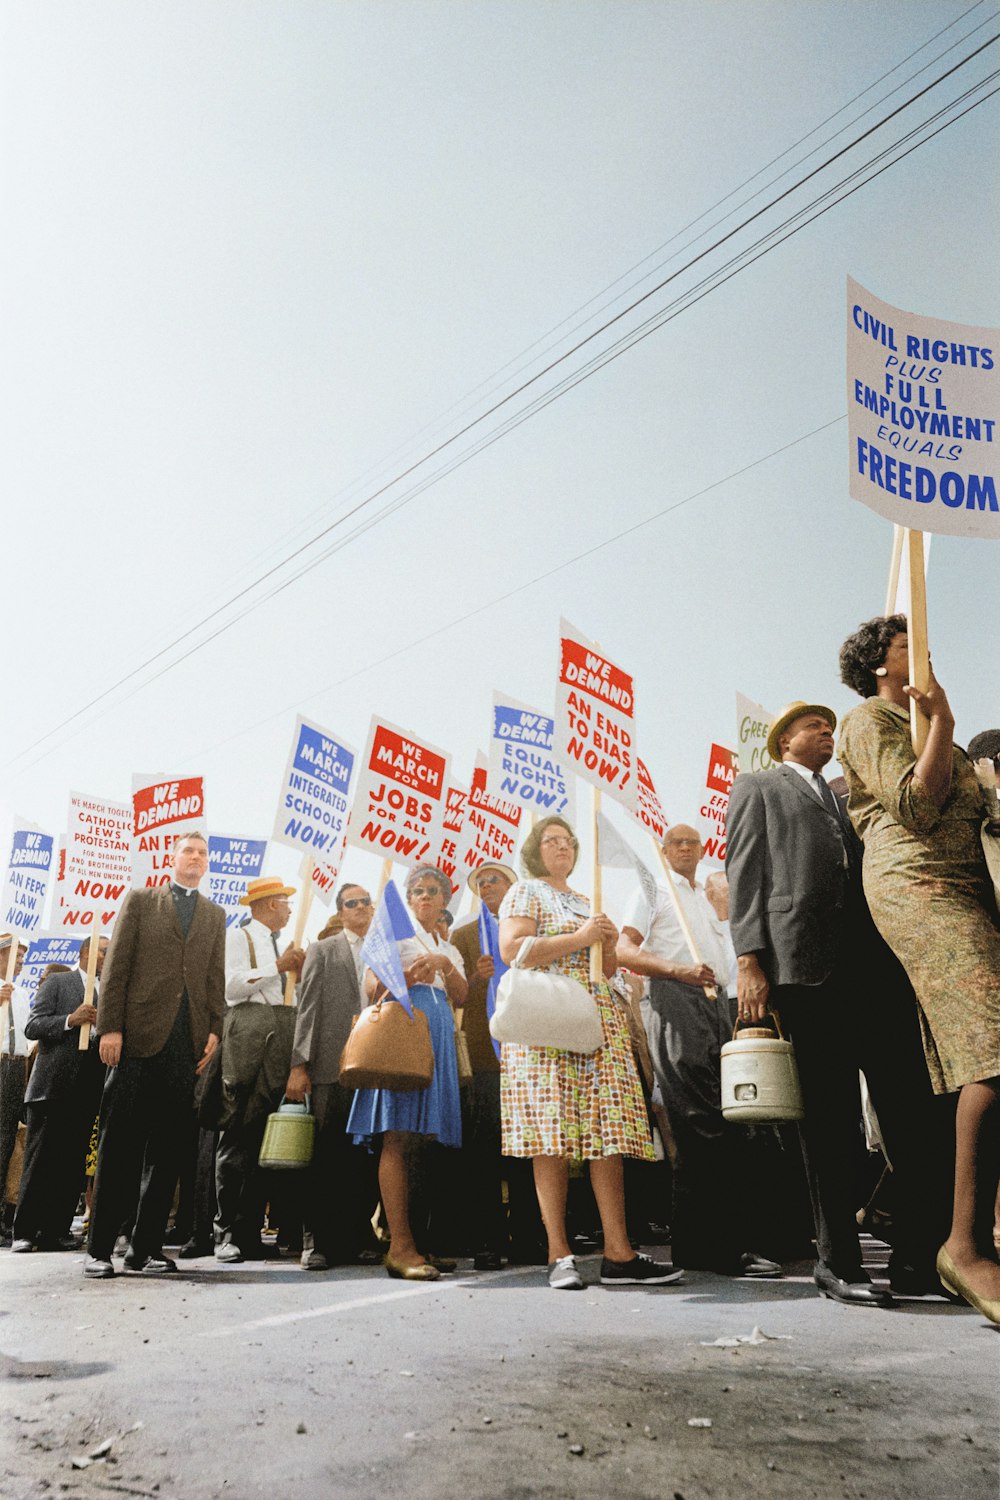 워싱턴 행진에서 투표권과 평등한 시민권을 요구하는 팻말을 들고 있는 시위대